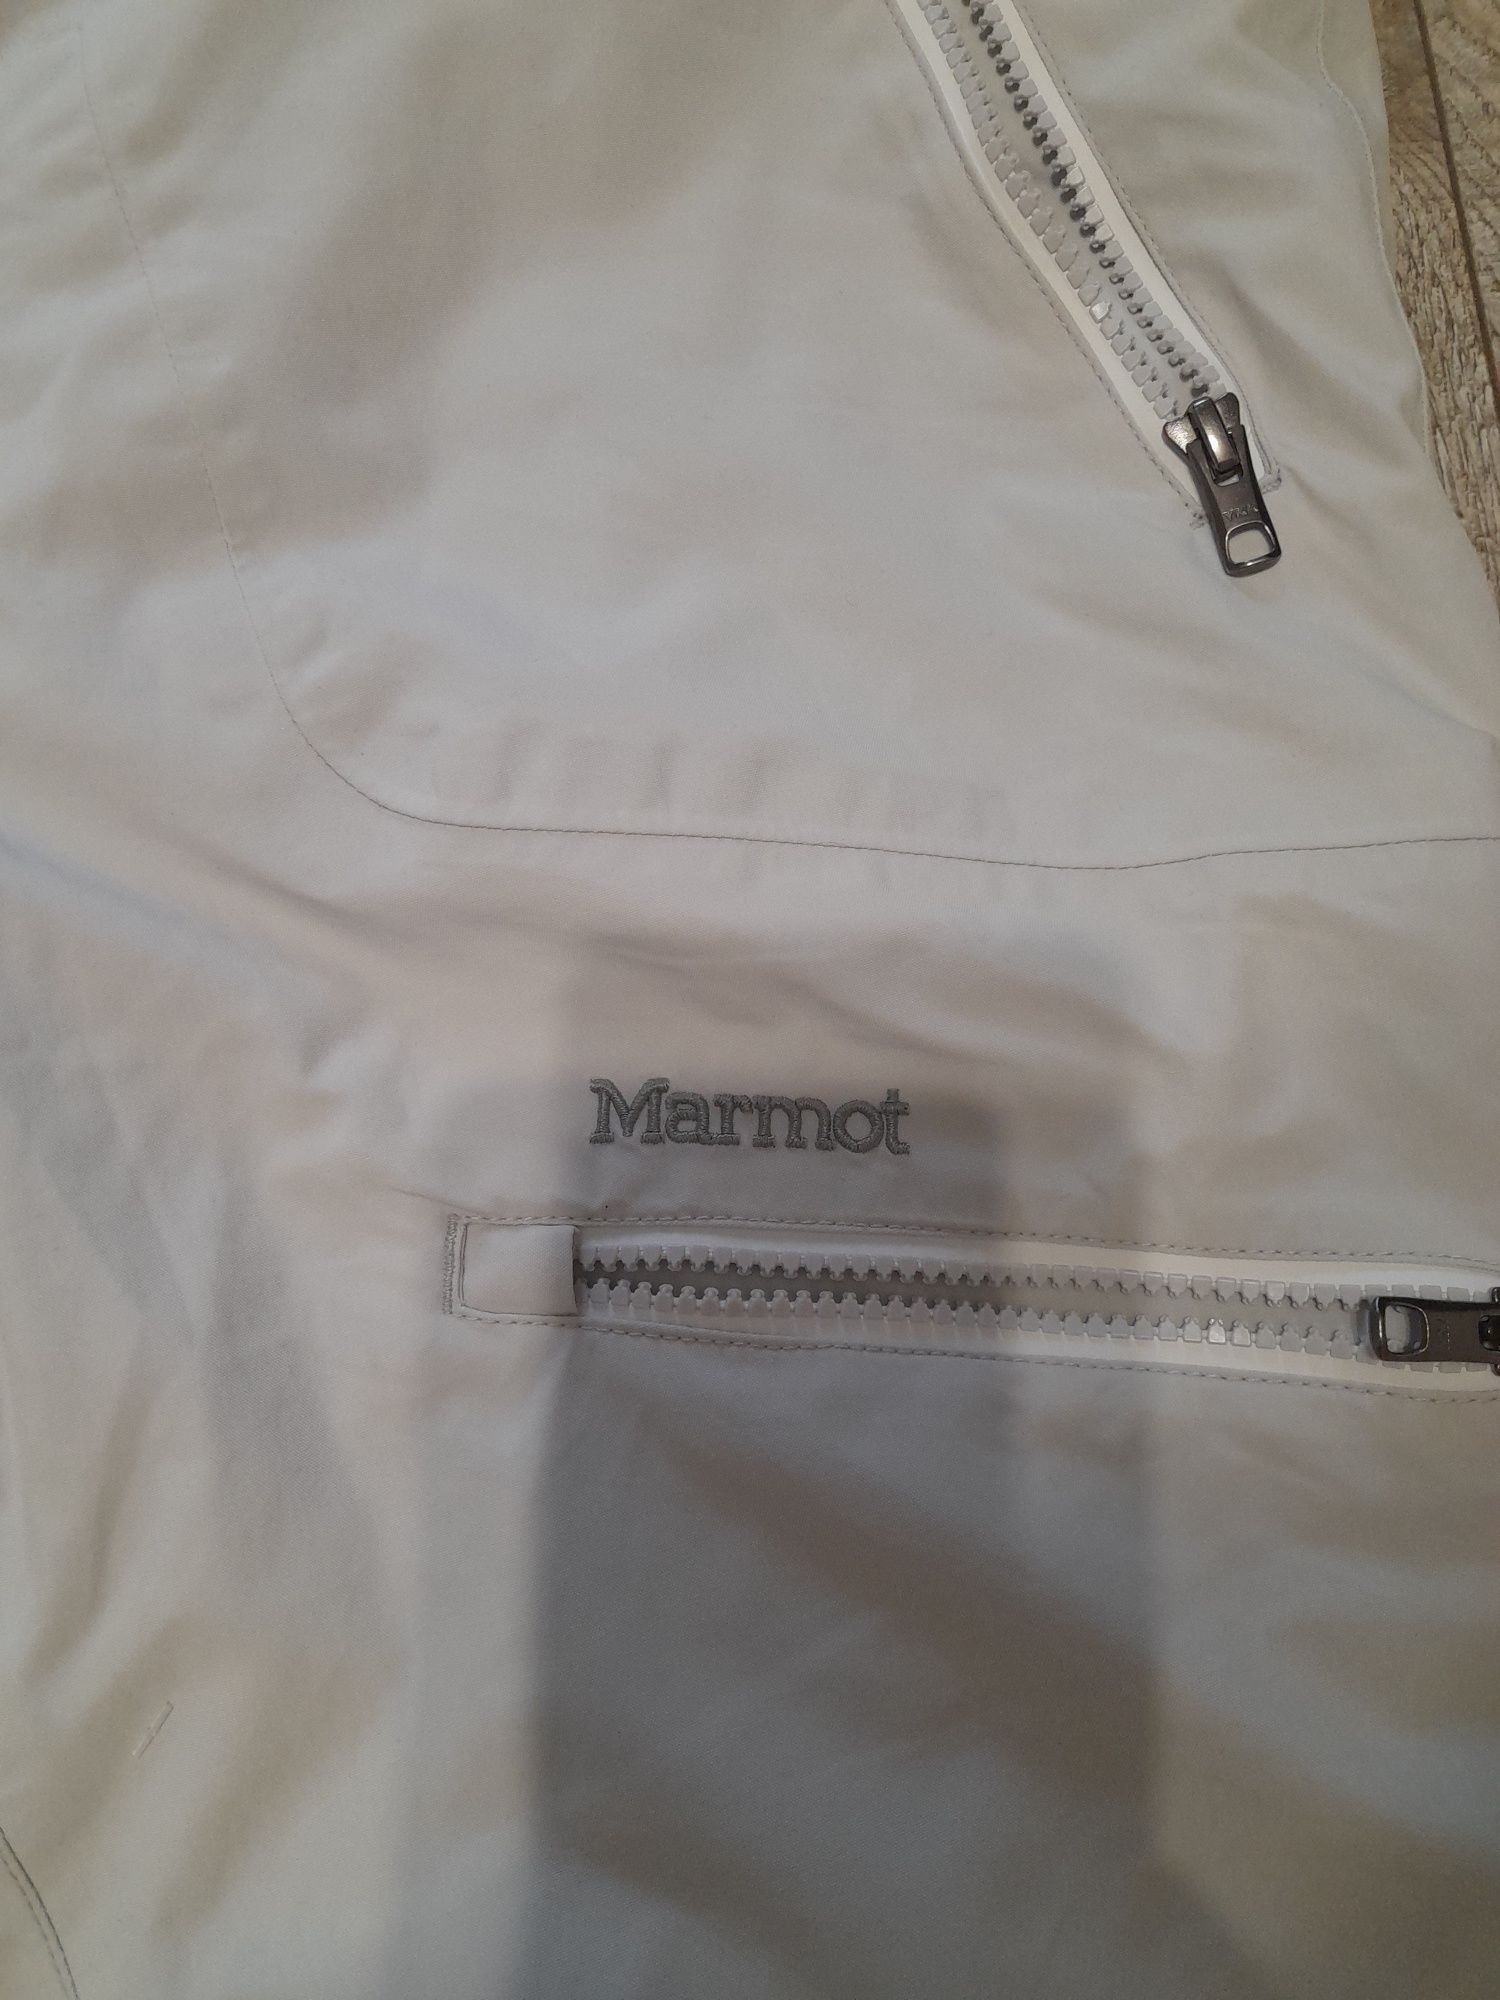 MARMOT spodnie narciarskie damskie rozmiar L białe